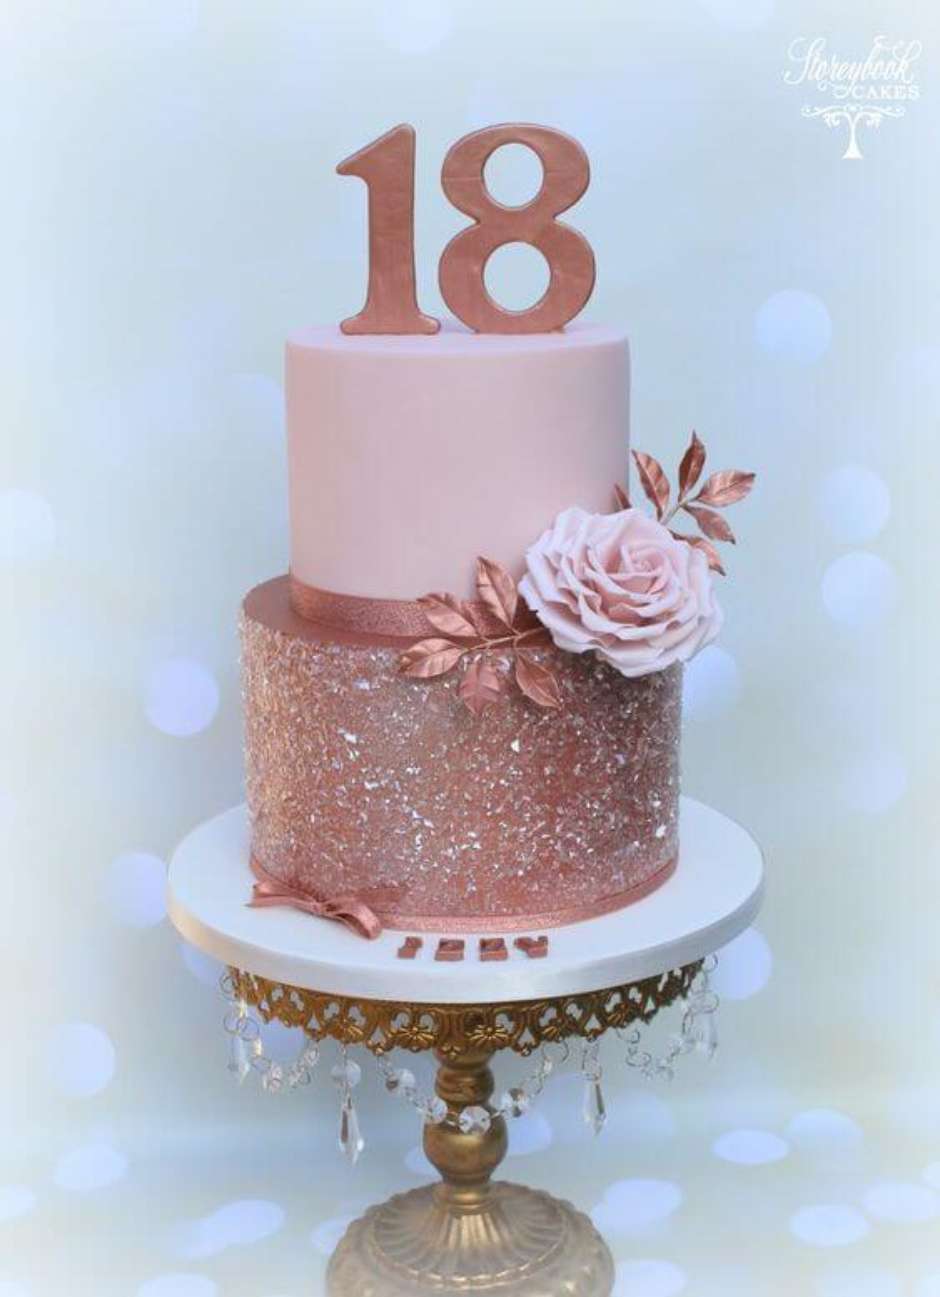 Festa de 18 anos: +70 Ideias e Temas para Organizar seu Aniversário   Decoração do bolo de aniversário, Bolo lindo de aniversário, Fotos de bolos